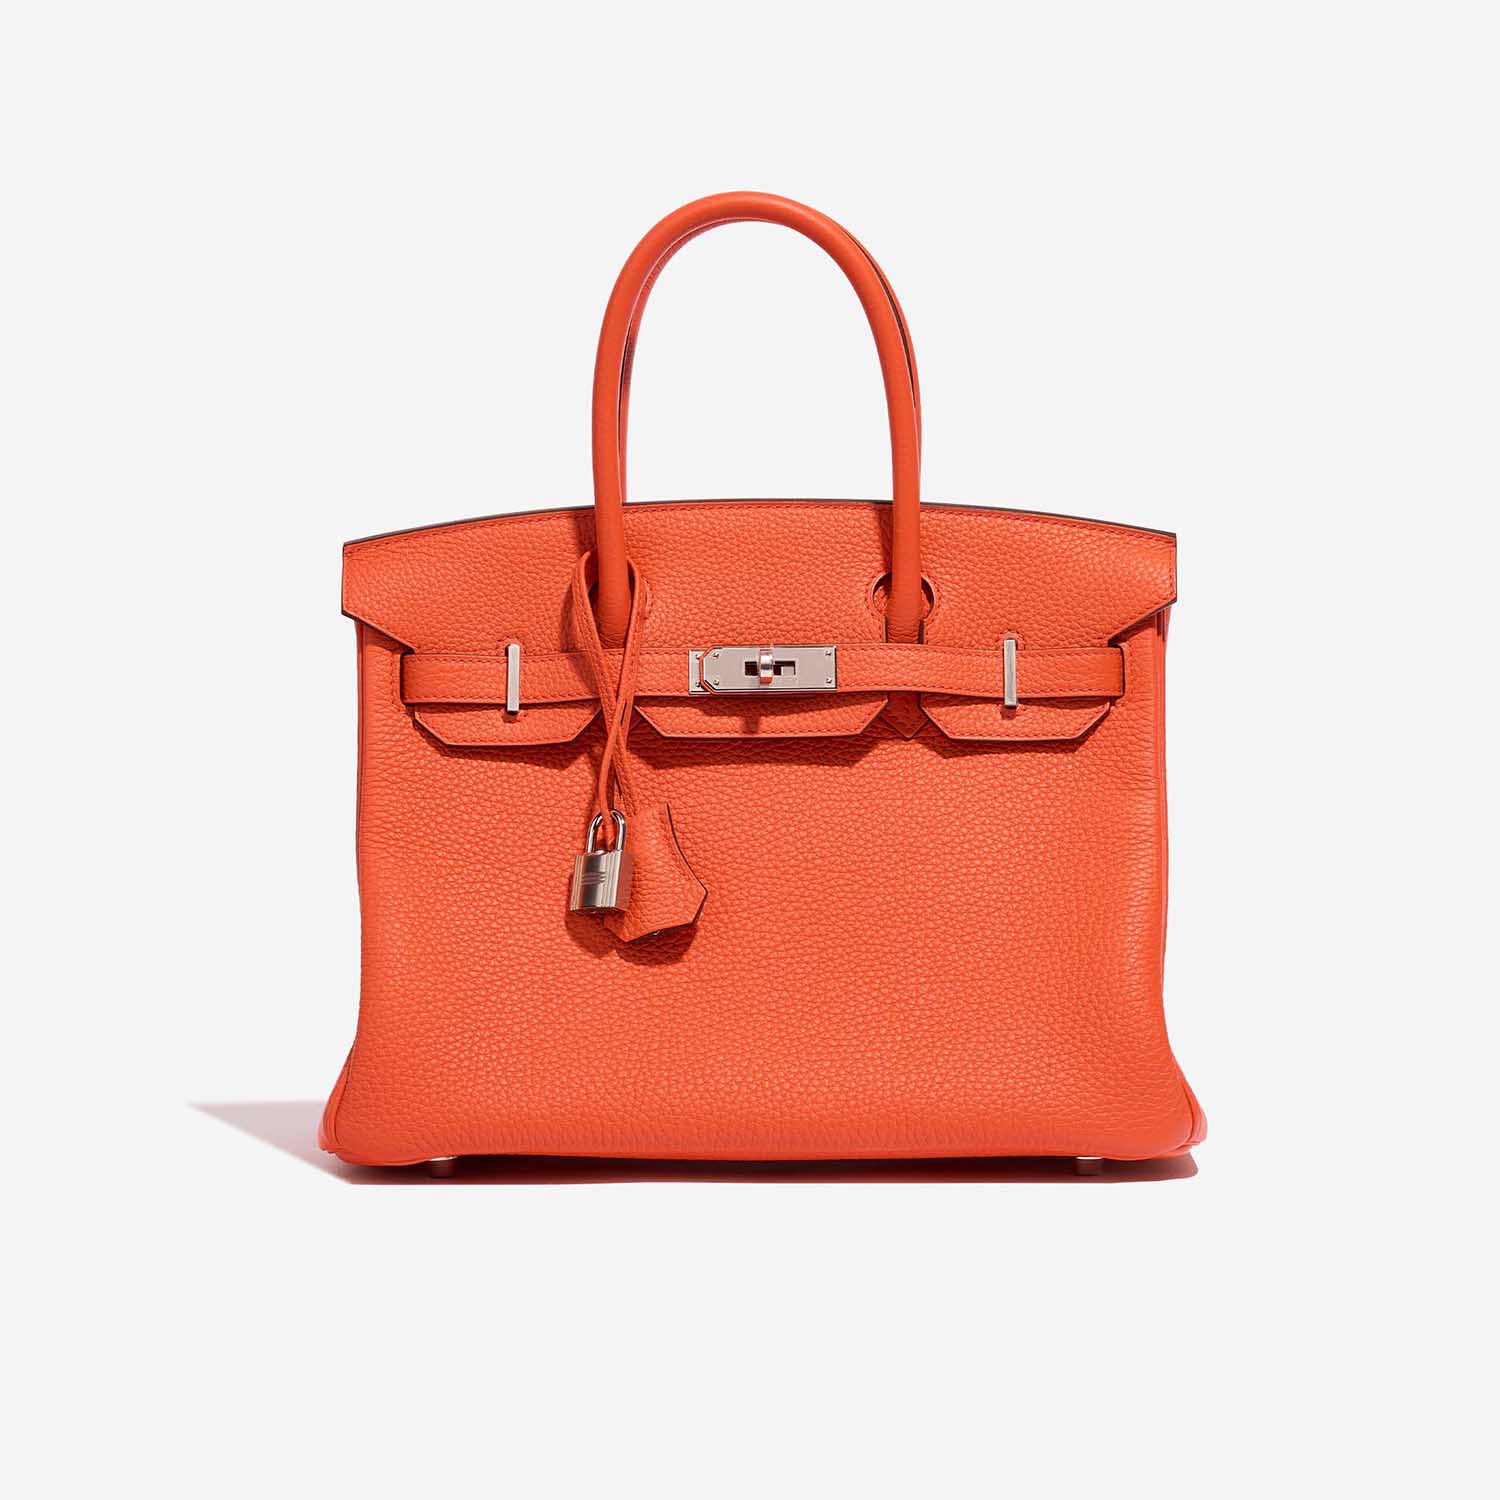 Hermès Birkin 30 OrangePoppy-Blush Front | Verkaufen Sie Ihre Designer-Tasche auf Saclab.com